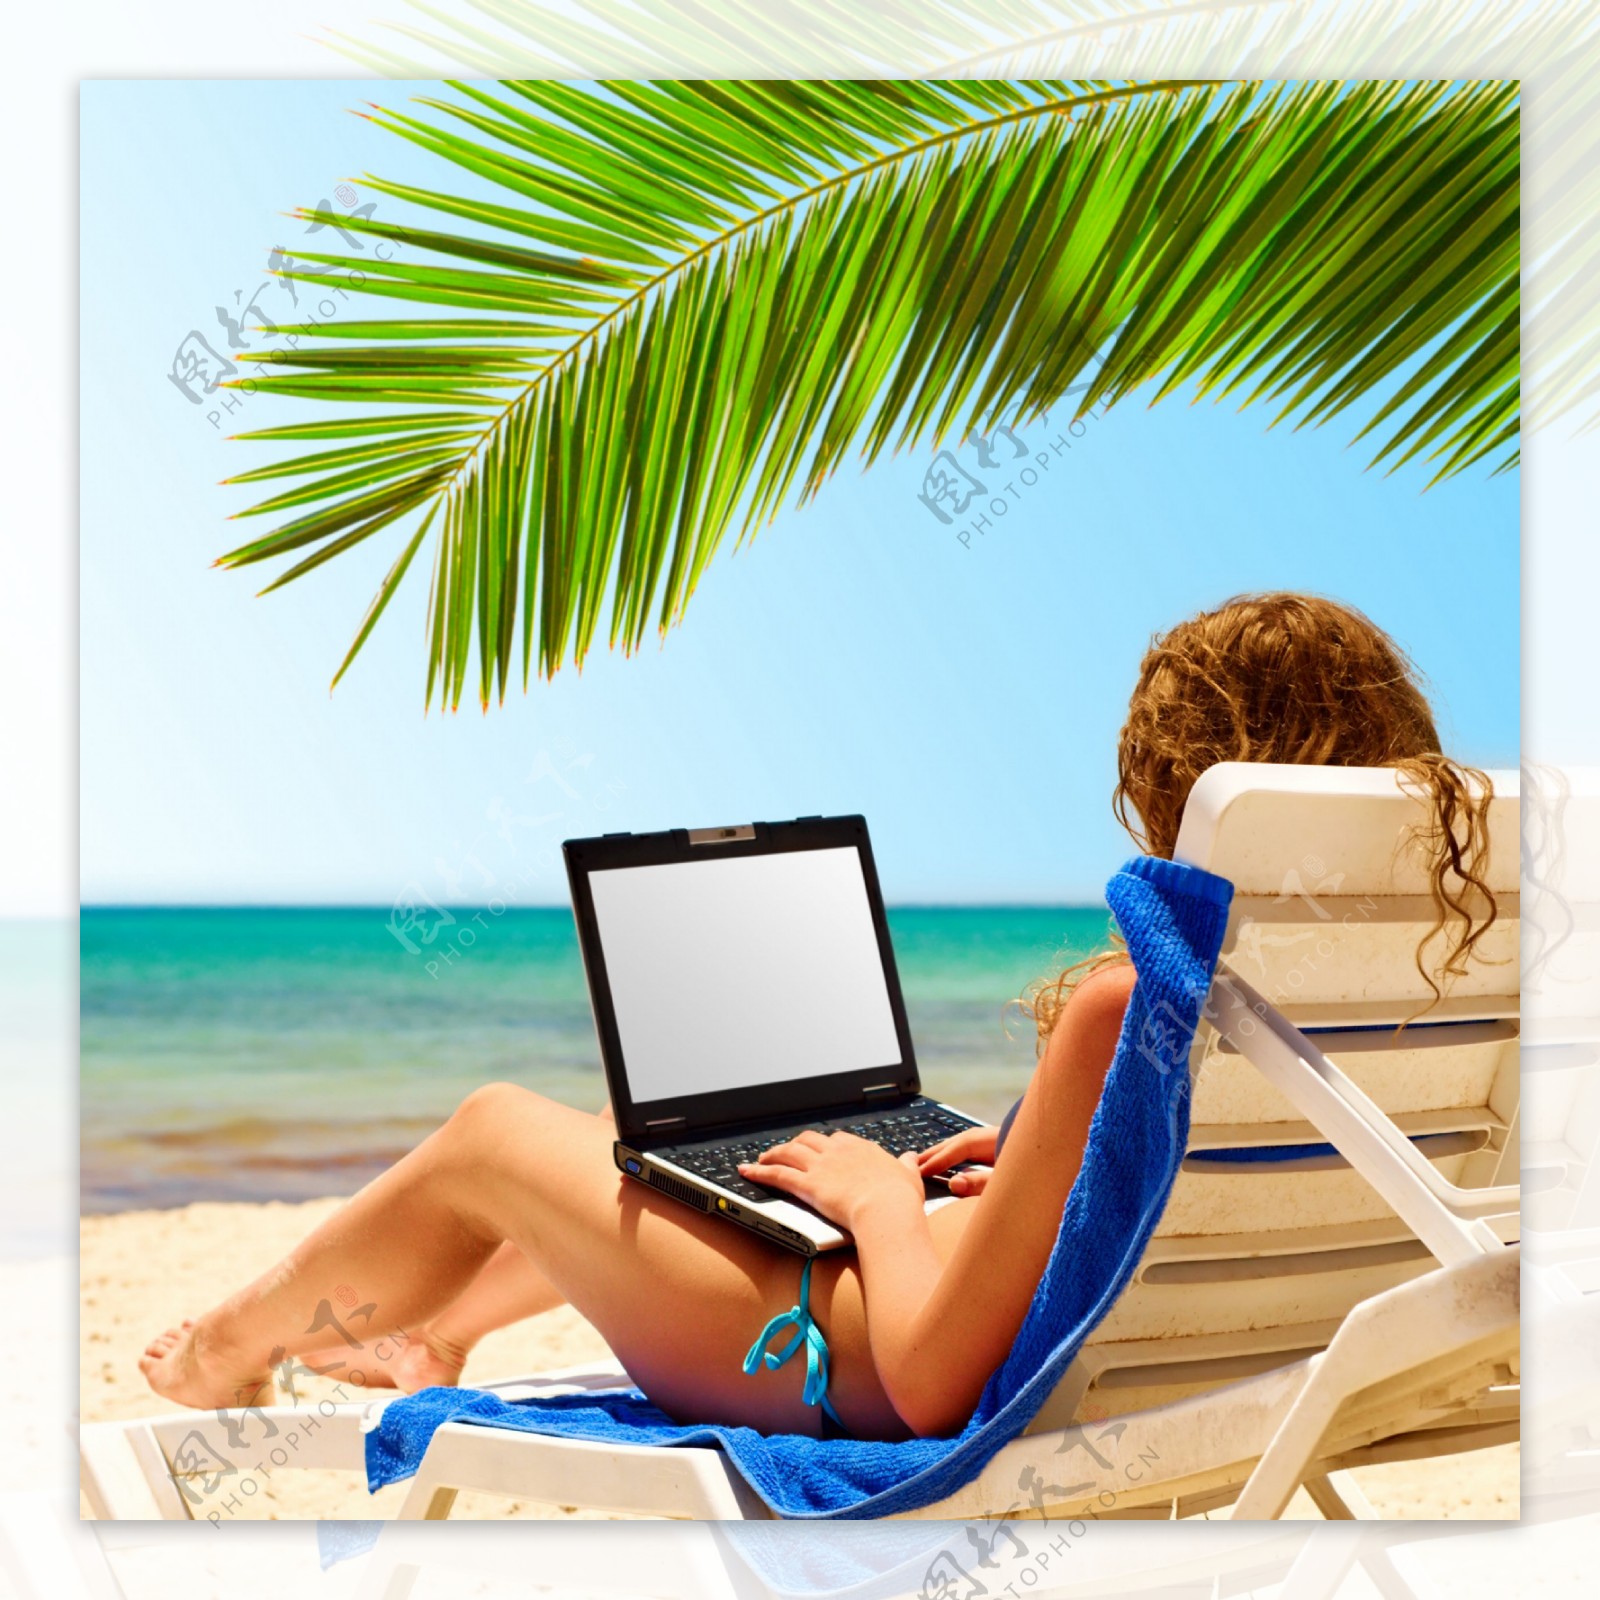 沙滩上坐在椅子上玩电脑的美女图片